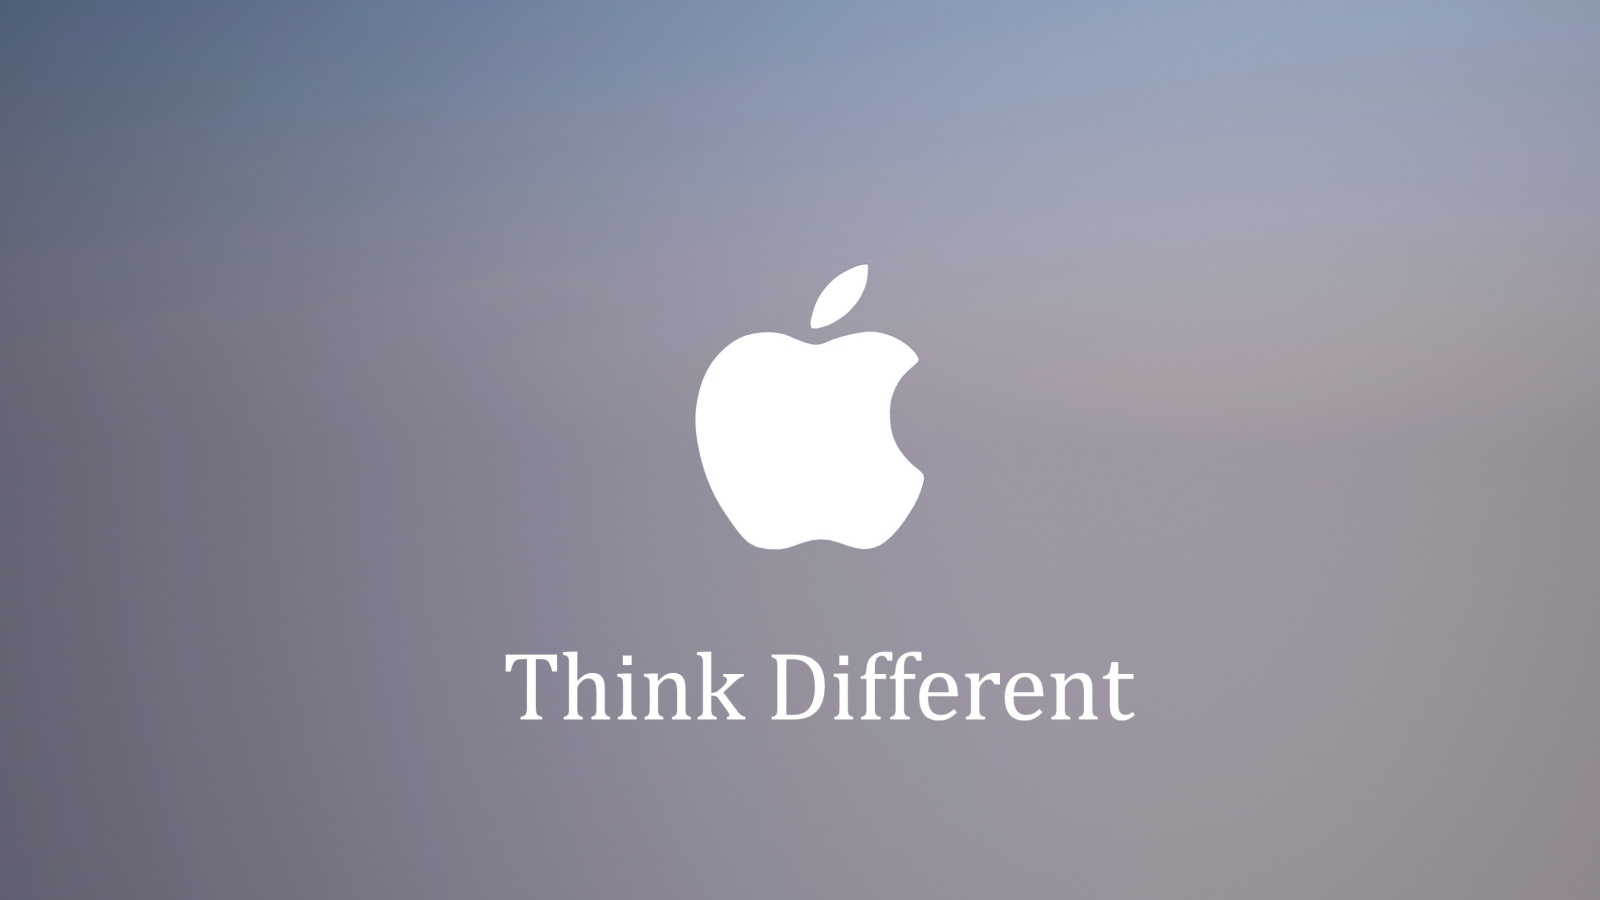 Das Apple, Think Different Wallpaper 1600x900